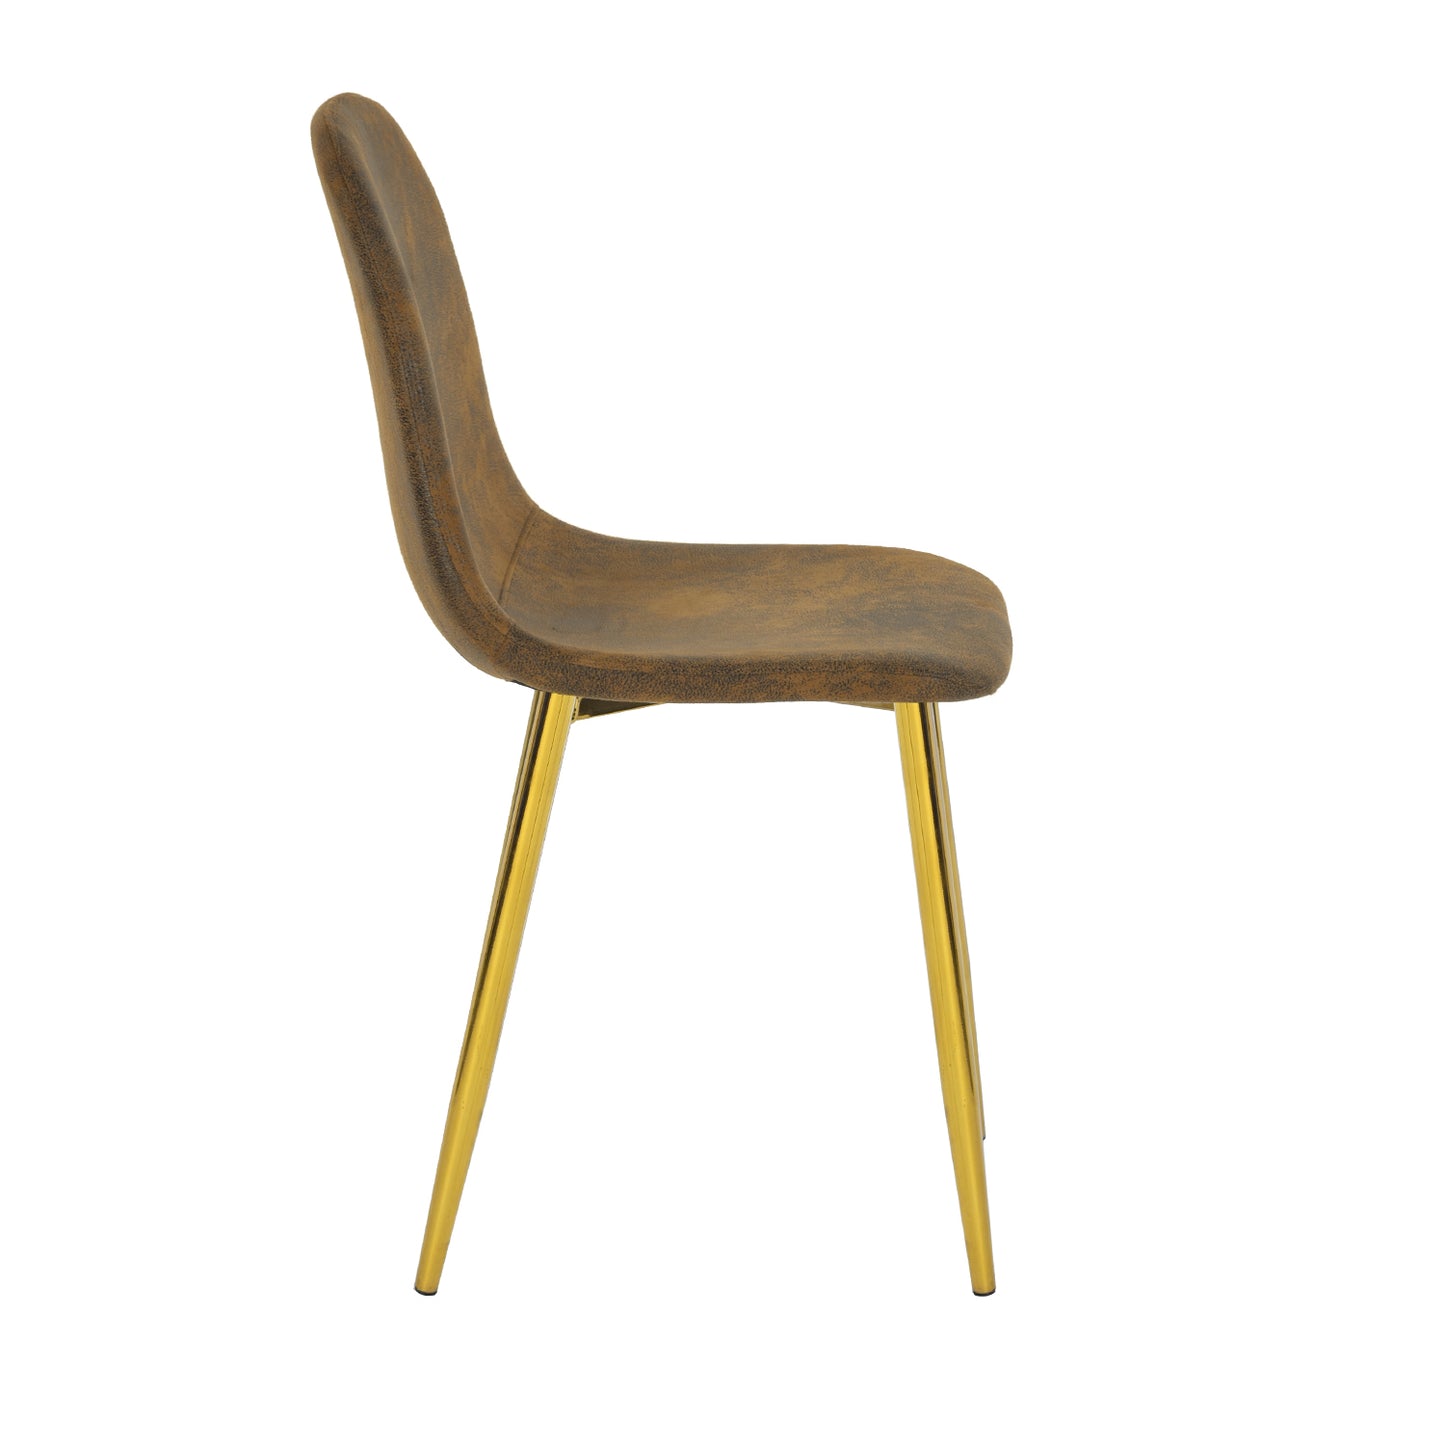 Lot de 4 chaises de salle à manger en daim marron avec pieds en métal doré-design contemporain